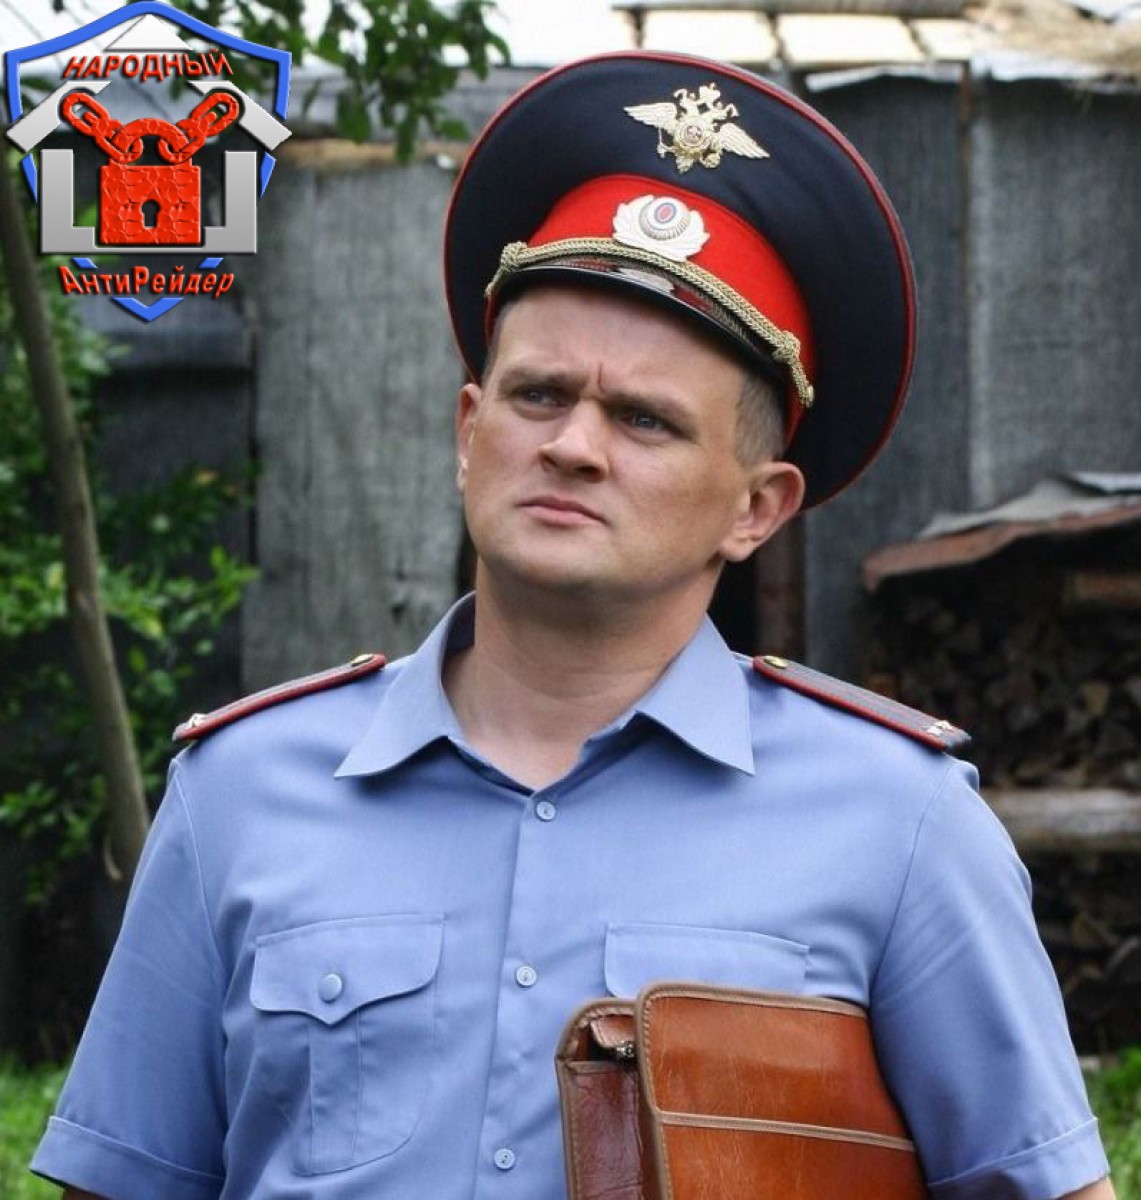 Народный антирейдер, Сергей фролов, народный полицейский